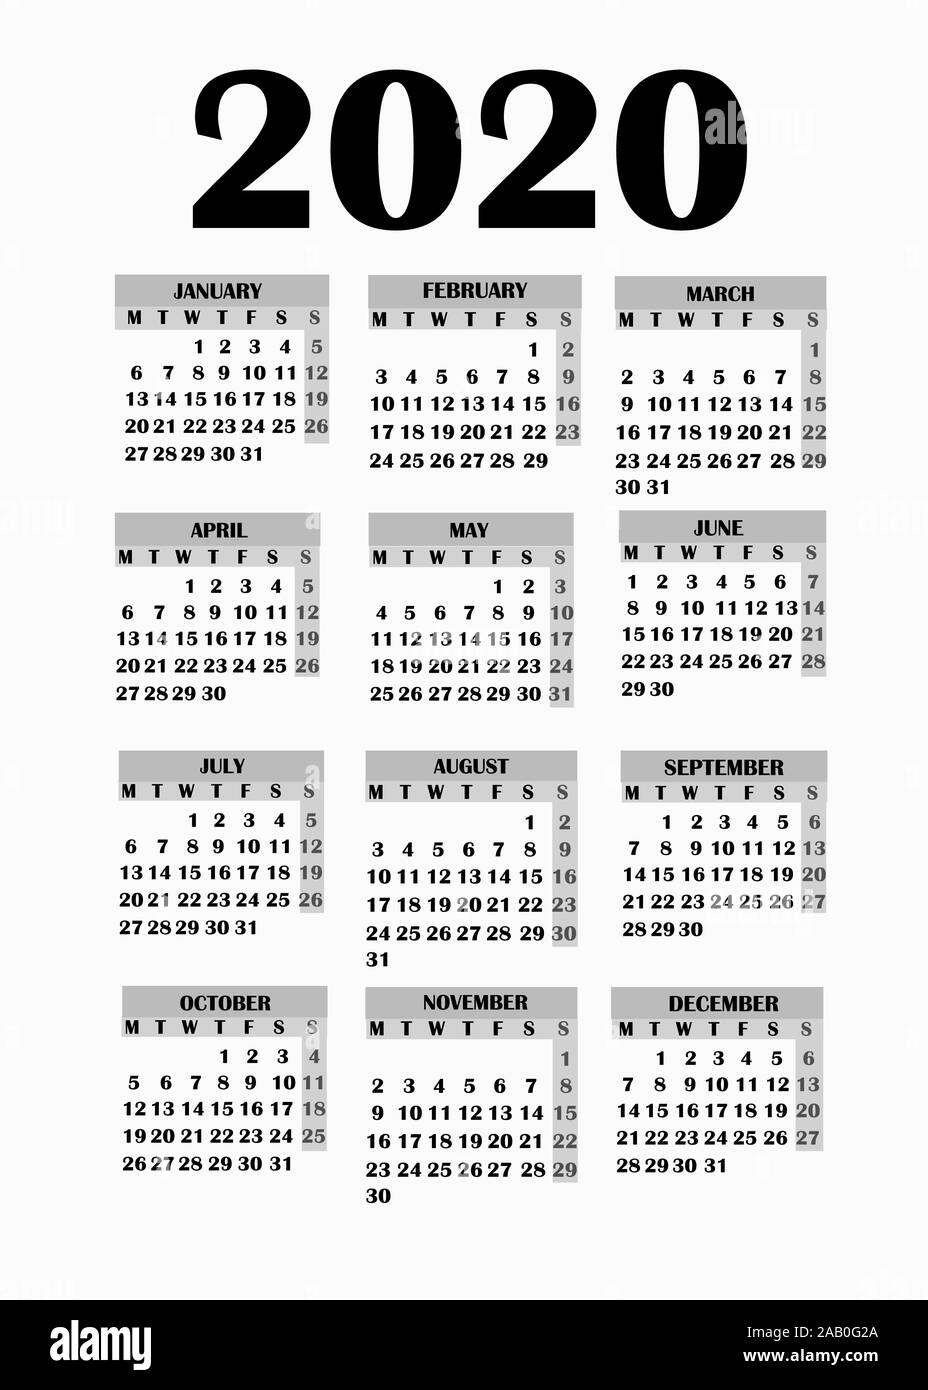 Jahr 2020 Kalender. Einfaches Design für Kalender 2020. Kalender auf weißem  Hintergrund für Organisation und Business. Woche beginnt am Montag.  Abbildung Stockfotografie - Alamy